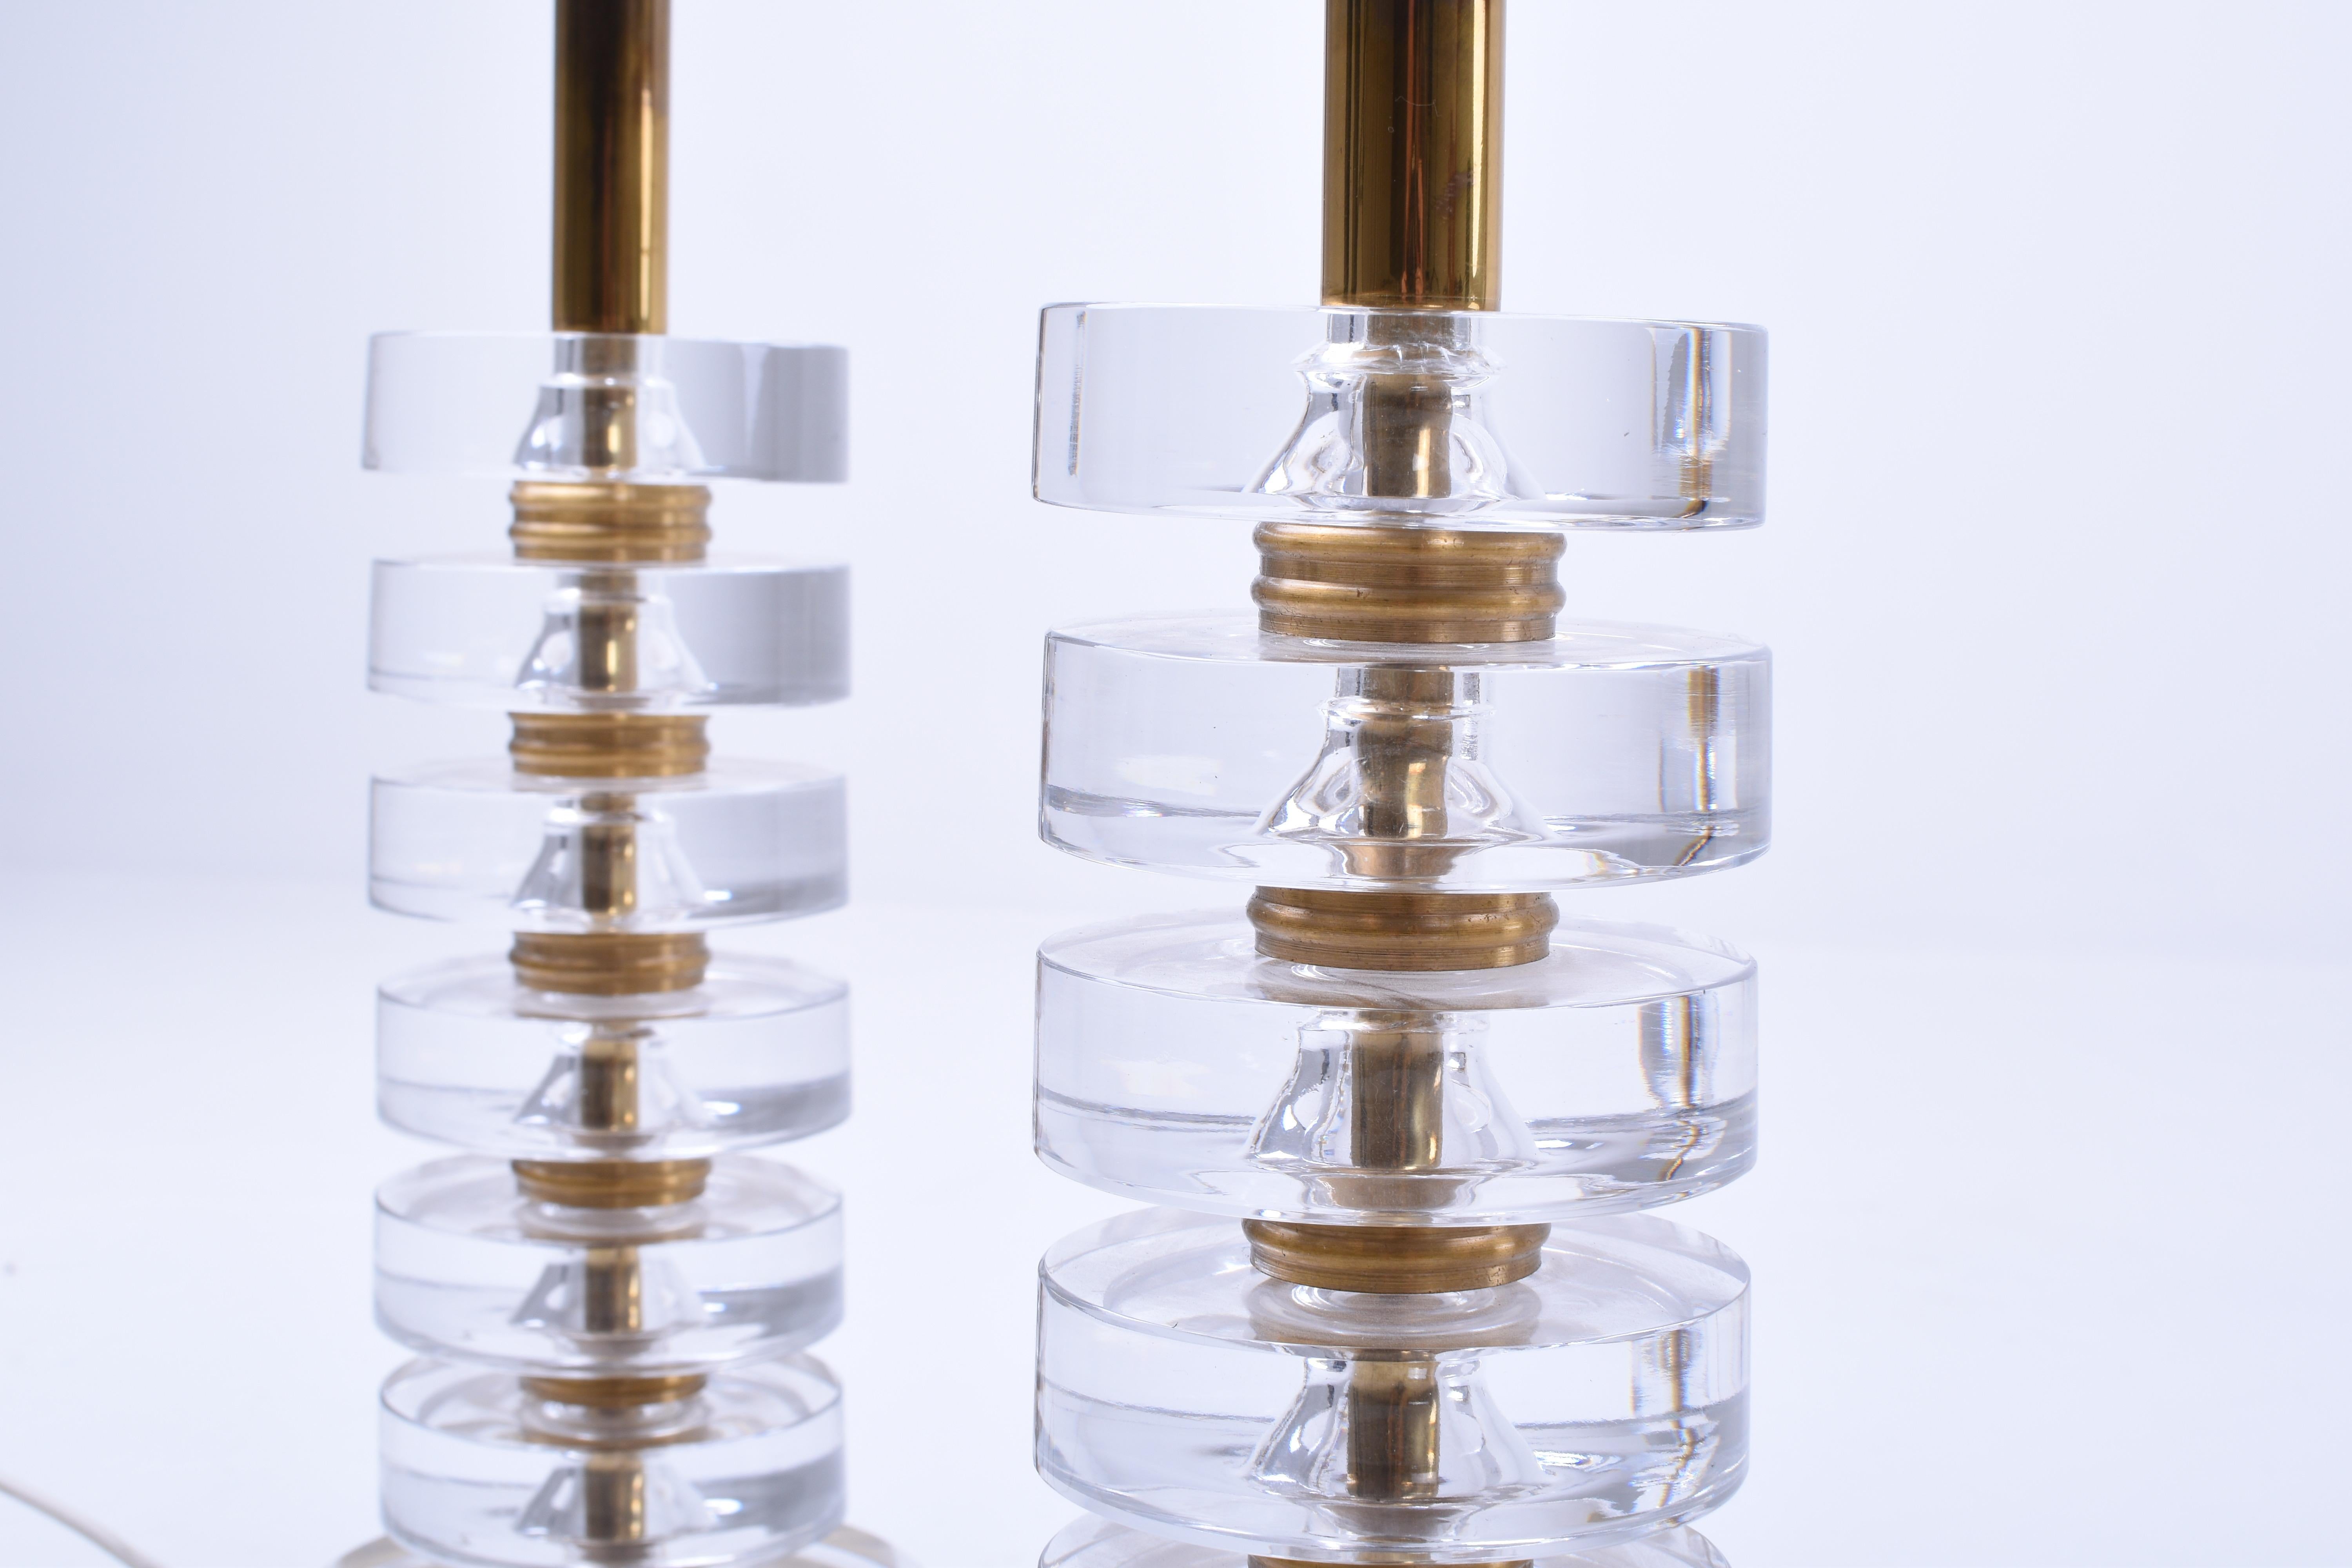 Ein Paar elegante Tischlampen von Carl Fagerlund für Orrefors. Das schöne Design der Lampen macht sie für alle Einrichtungsstile geeignet.
Die Lampen bestehen aus sechs Scheiben aus klarem Kristallglas, die durch massive Messingscheiben getrennt